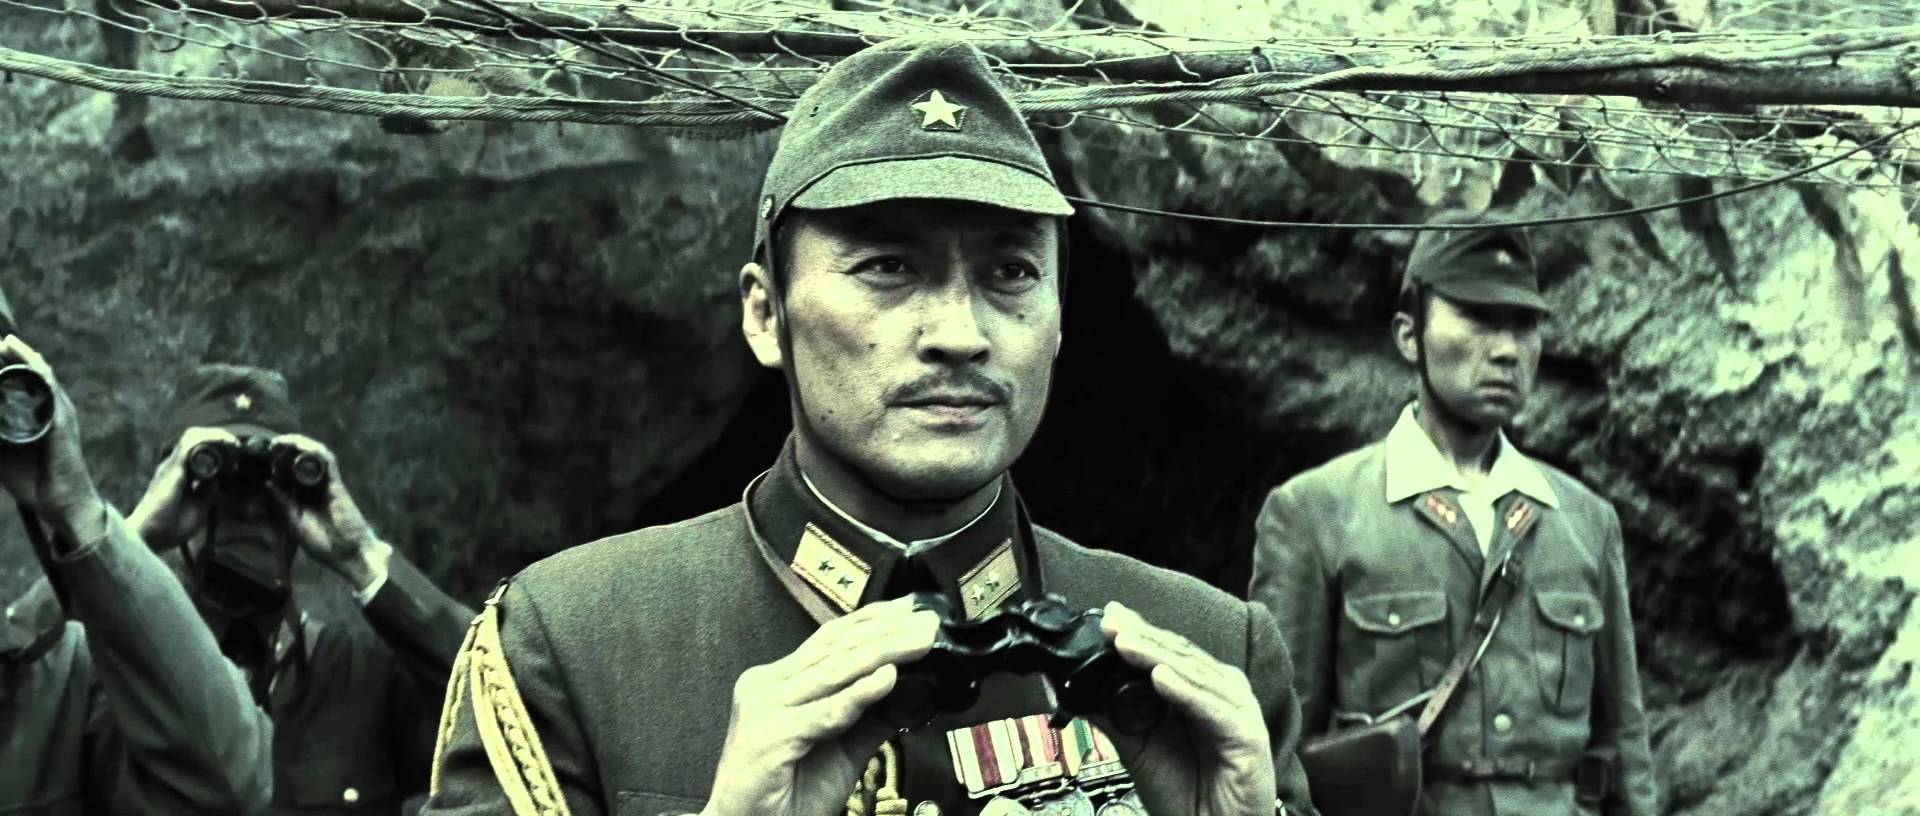 40 лучших исторических фильмов всех времен Письма с Иводзимы (Letters from Iwo Jima) 2006